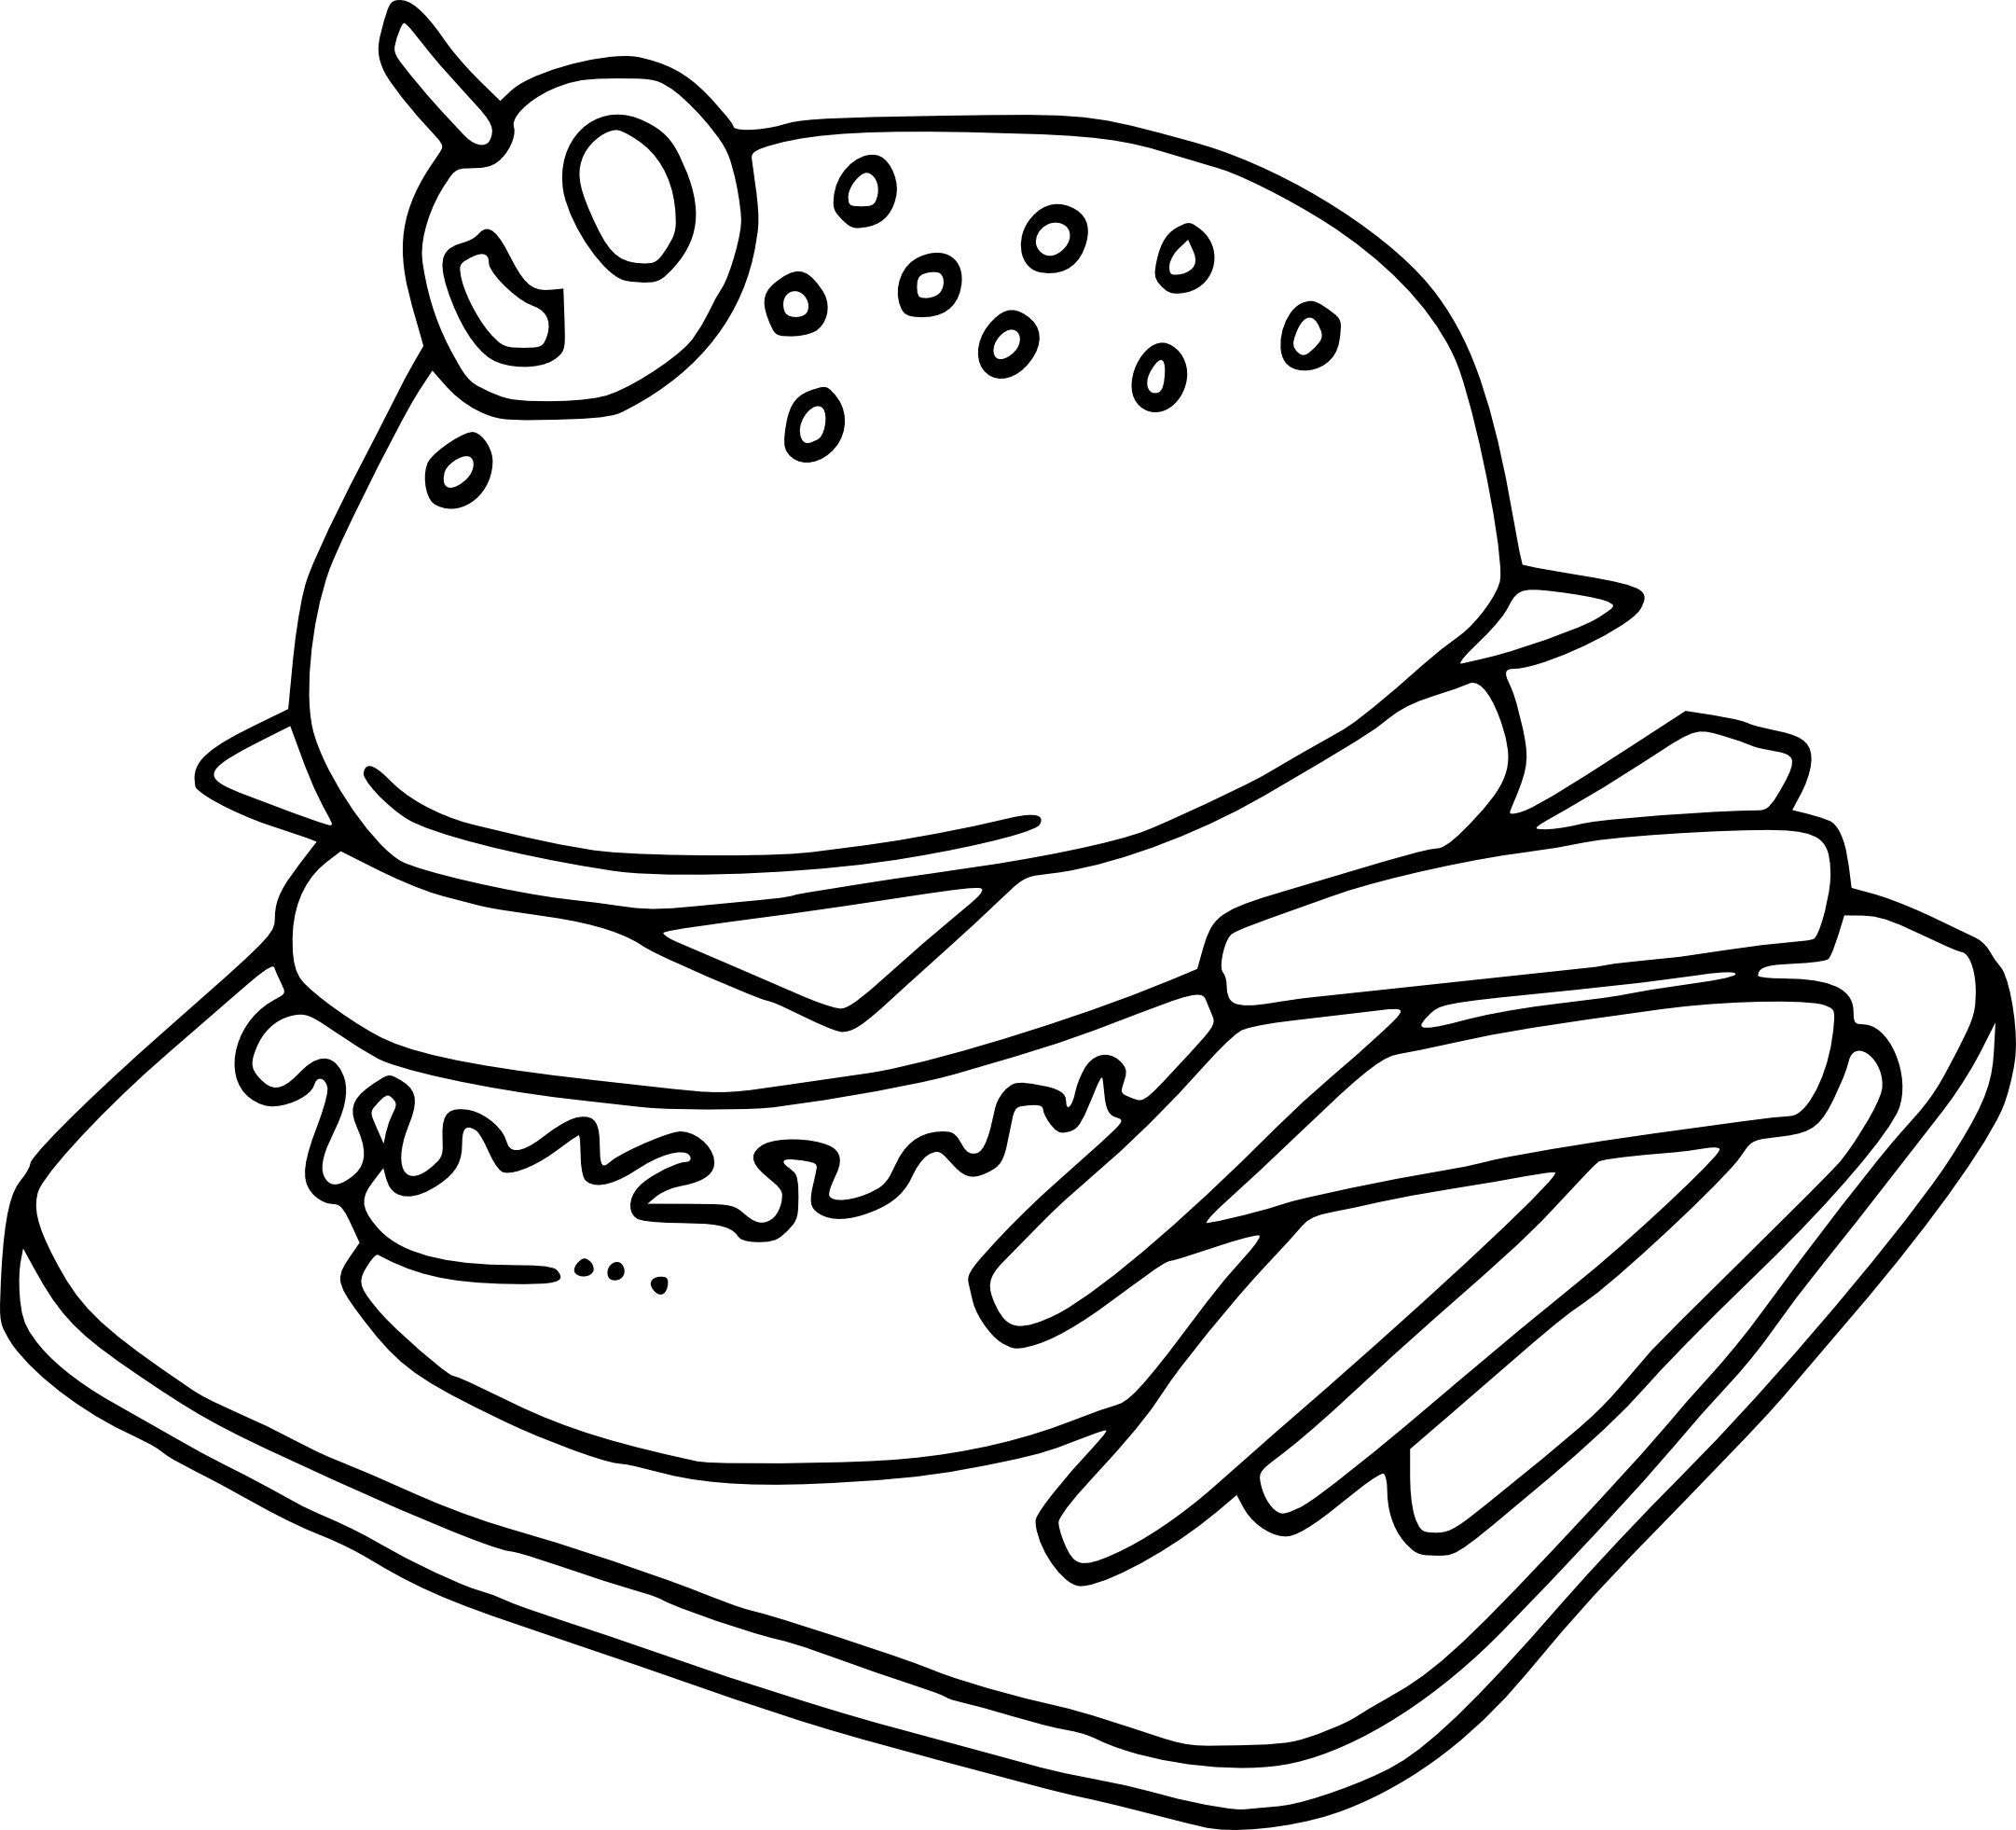 Раскраски фуд. Раскраска еда. Раскраска бургер. Раскраска гамбургер. Раскраска бутерброд.